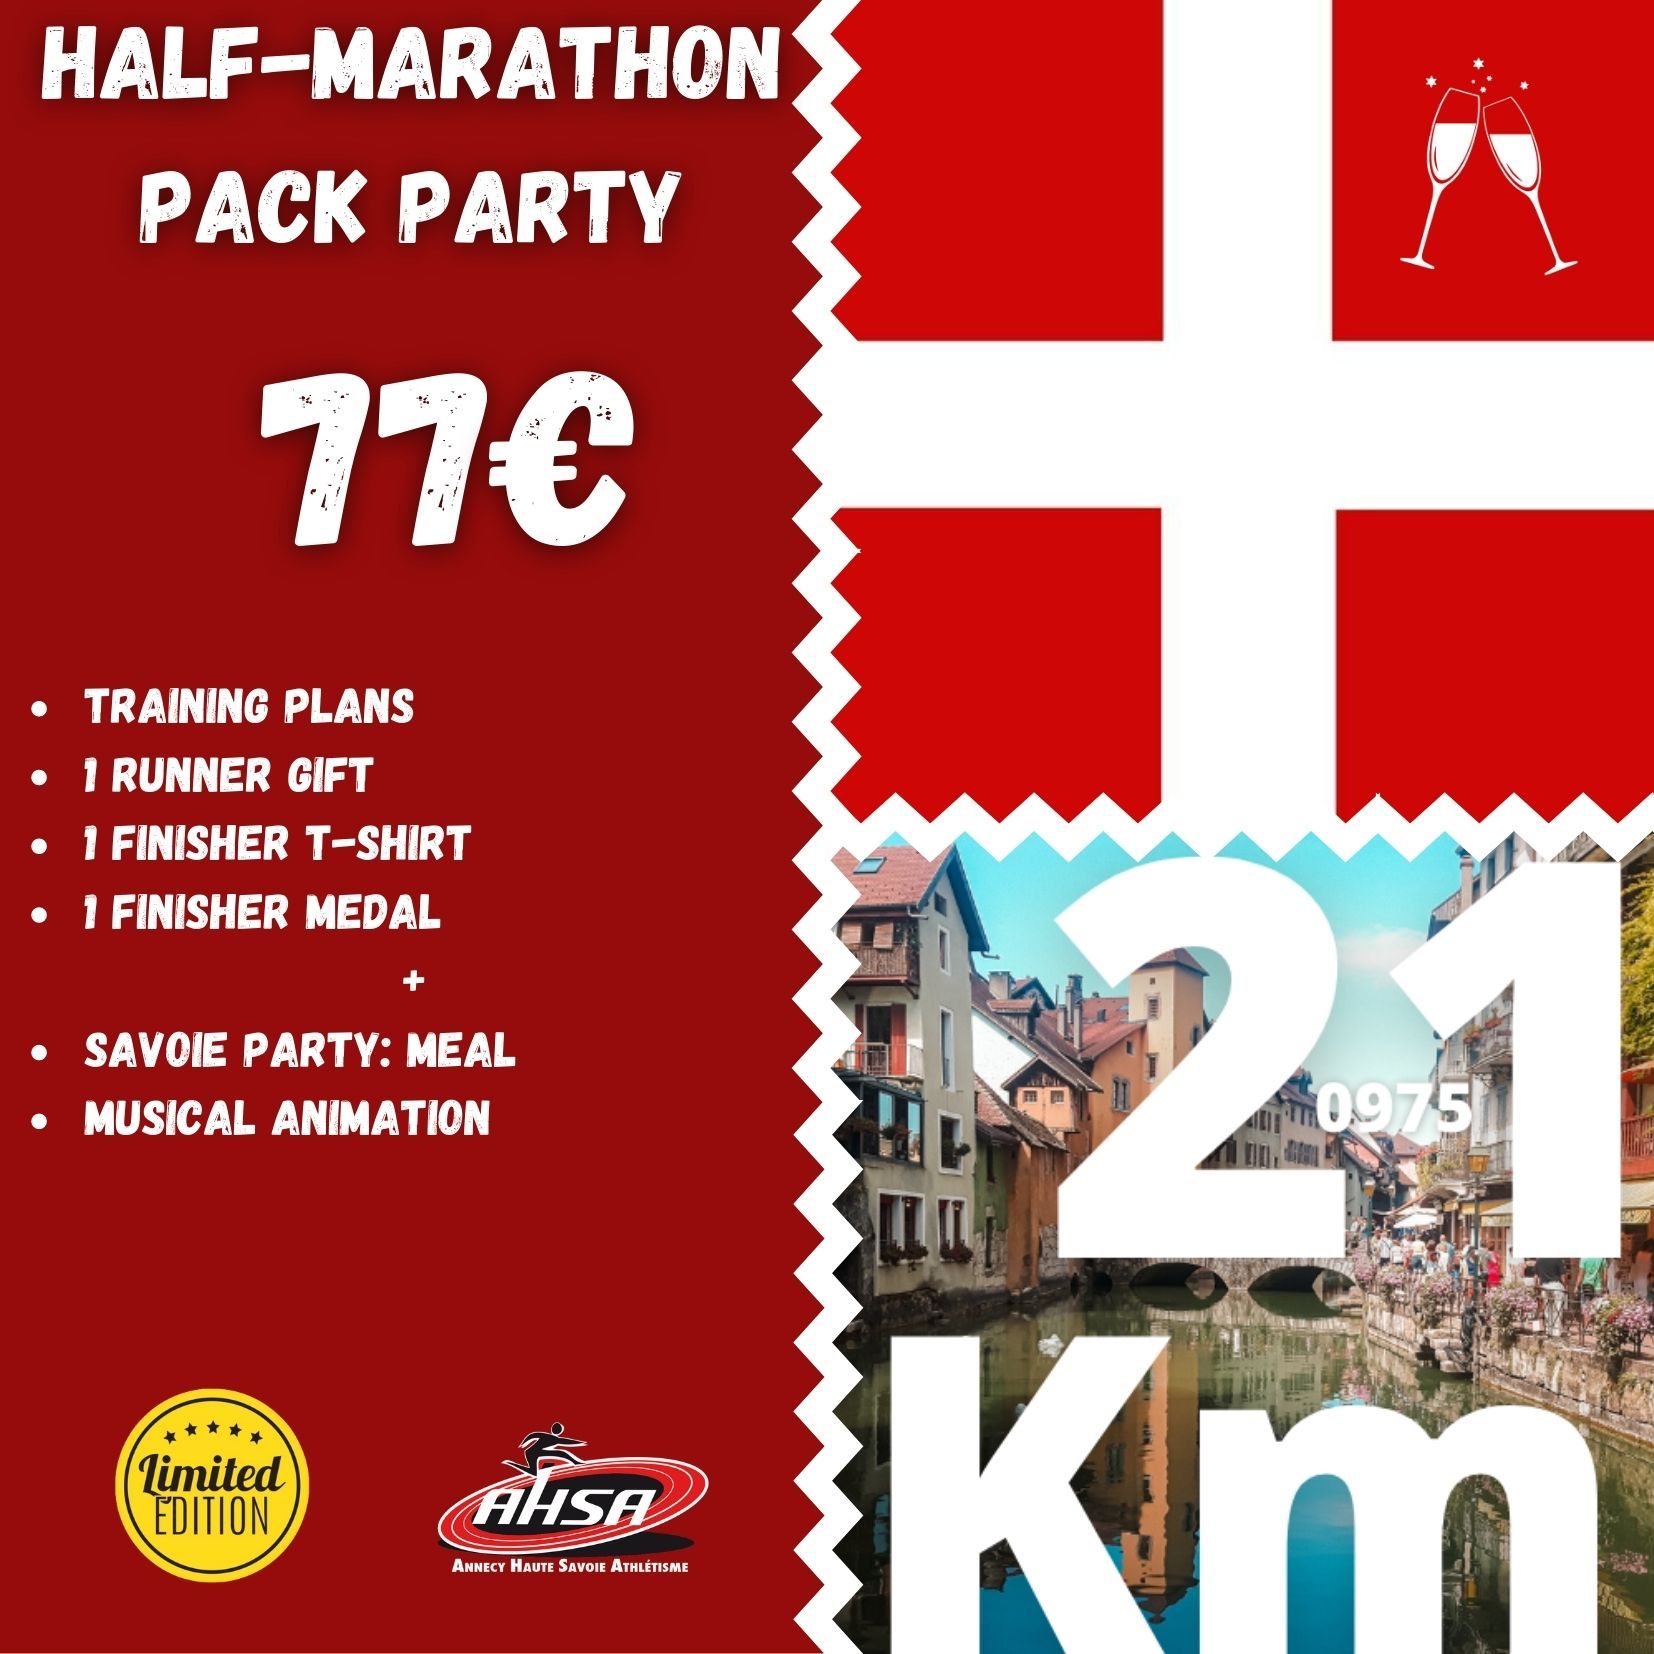 Half-marathon, Annecy lake, running, Haute-Savoie, Rhône Alpes, France, ASHA, Annecy Haute-Savoie Athletism